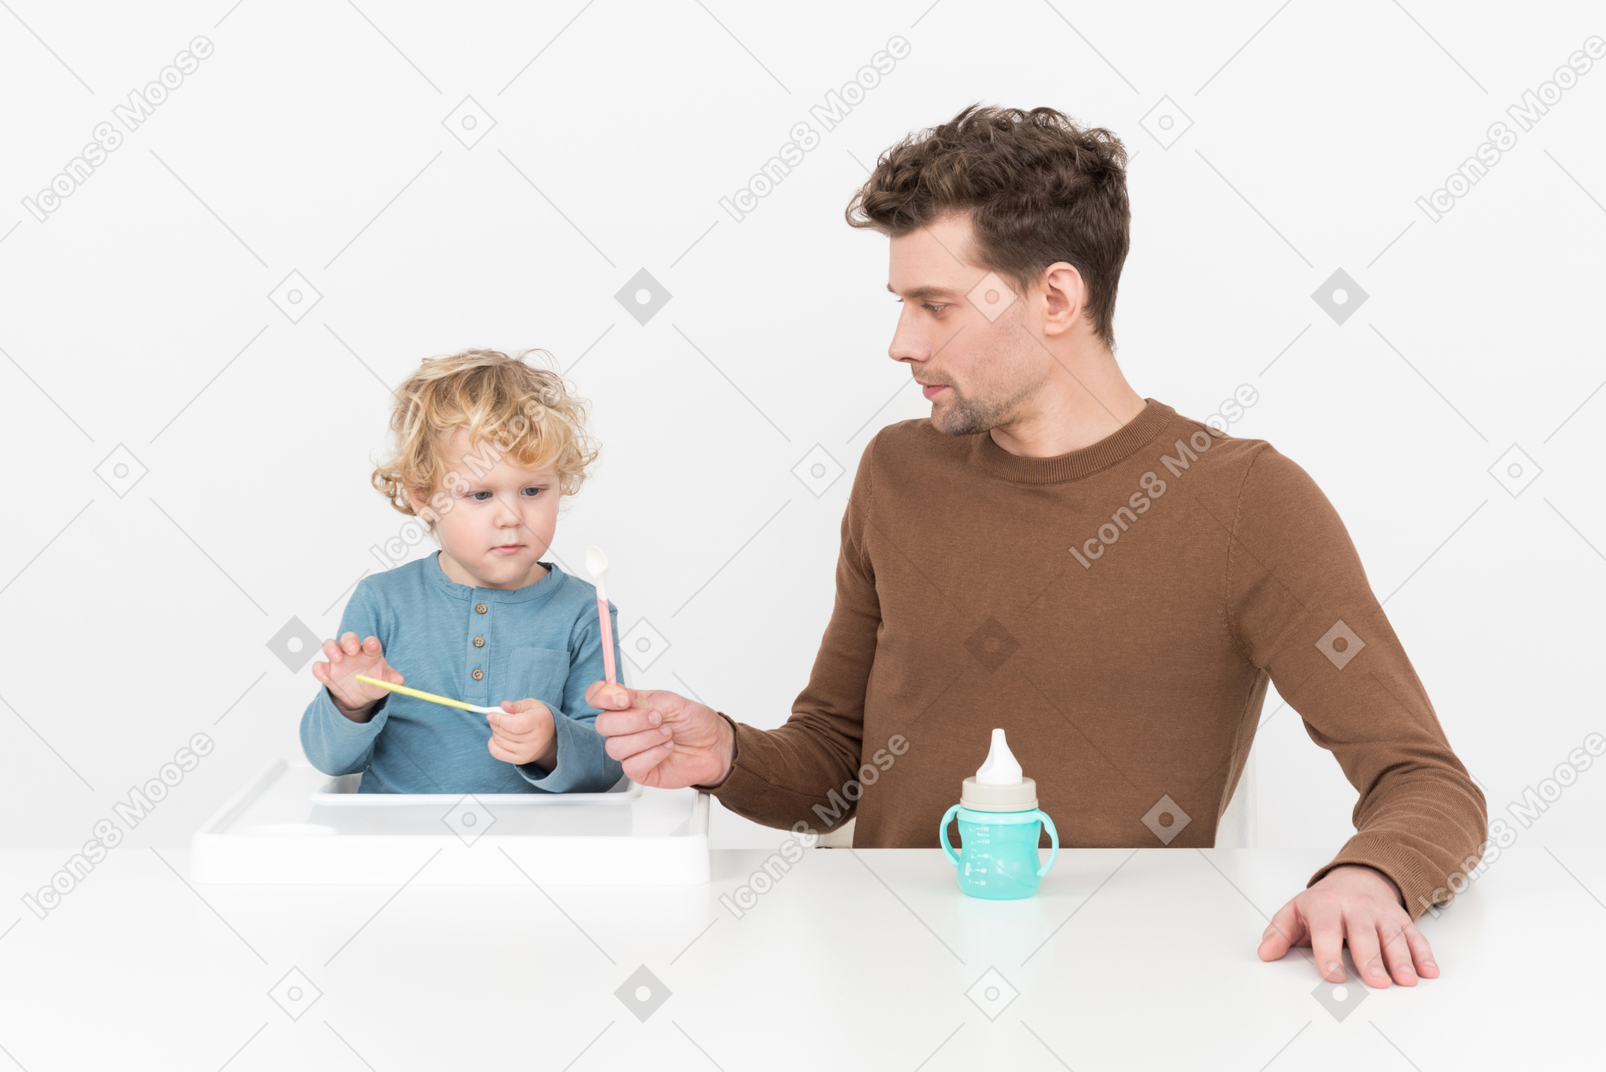 Padre insegna a suo figlio come usare un cucchiaio